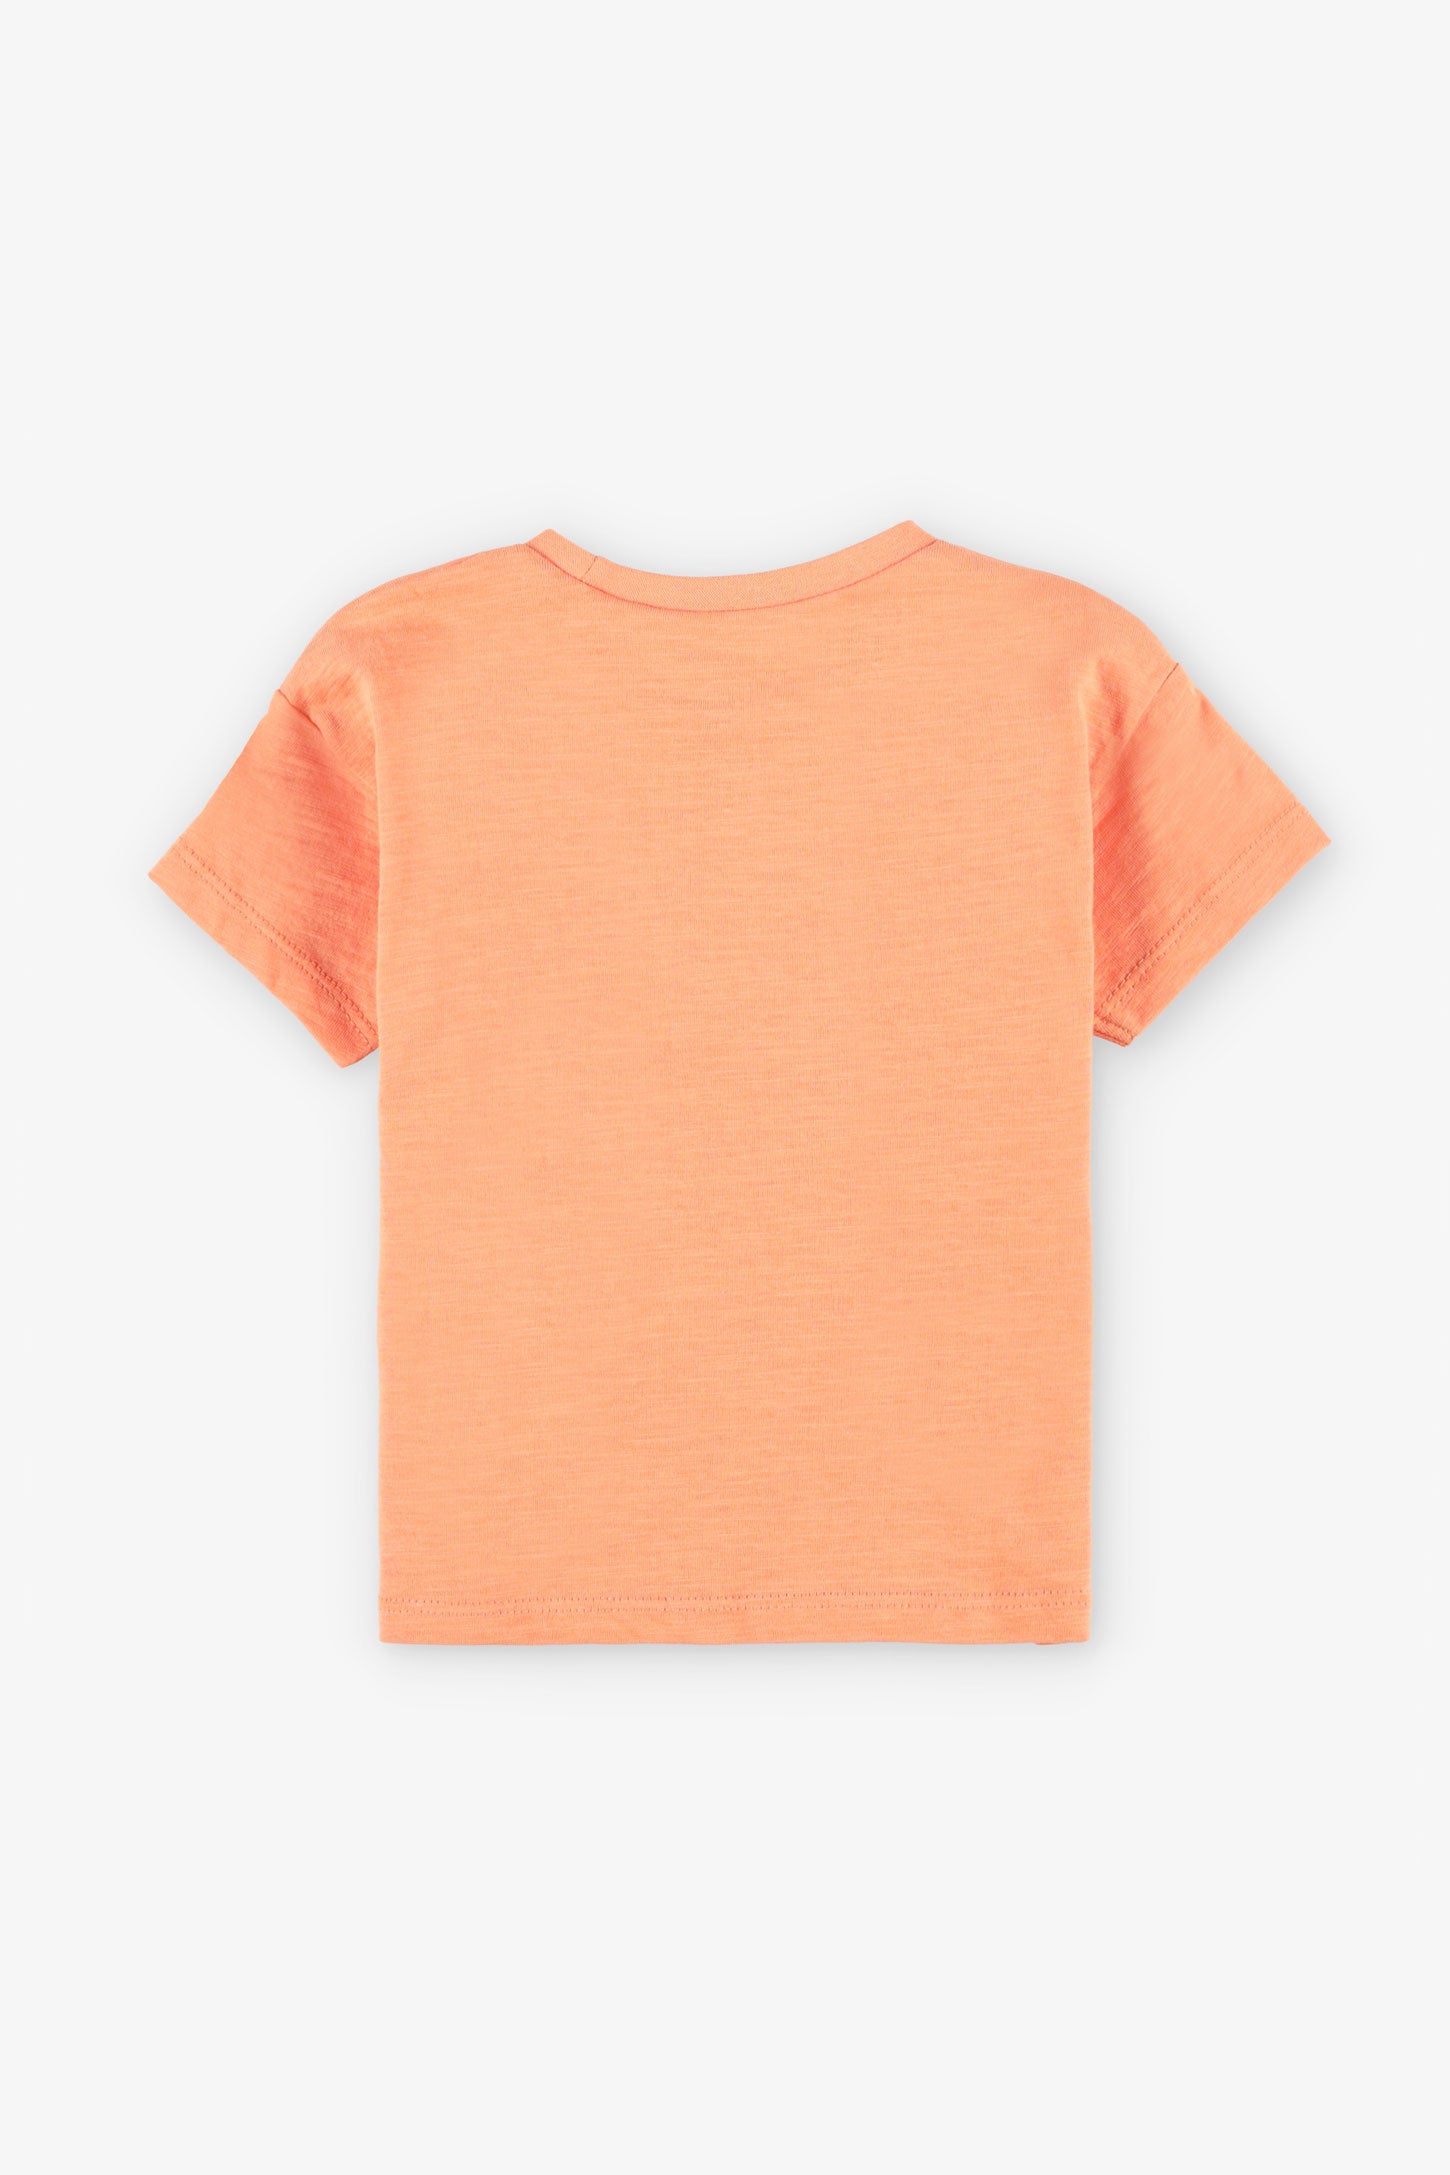 T-shirt coupe ample en coton, 2/15$ - Bébé fille && ORANGE